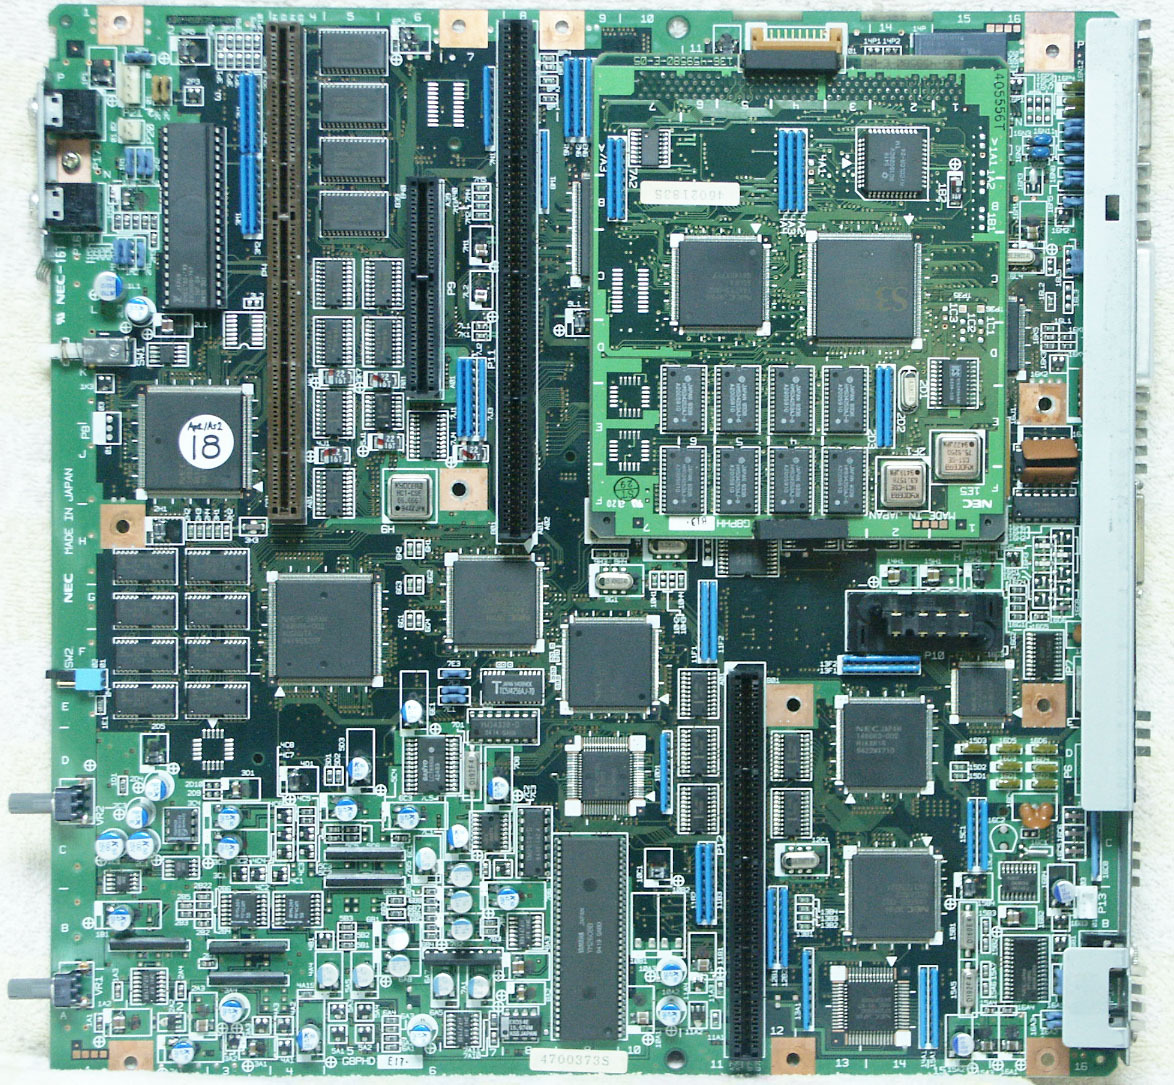 【完全整備品】 PC-9821Ap2 W型番相当 (PODP-83 / 21.6MB / 543MB / 3.5x2 / 86音源FM / S3-928 ) ソリッドコンデンサ - 18_メインボード(現品の写真です)